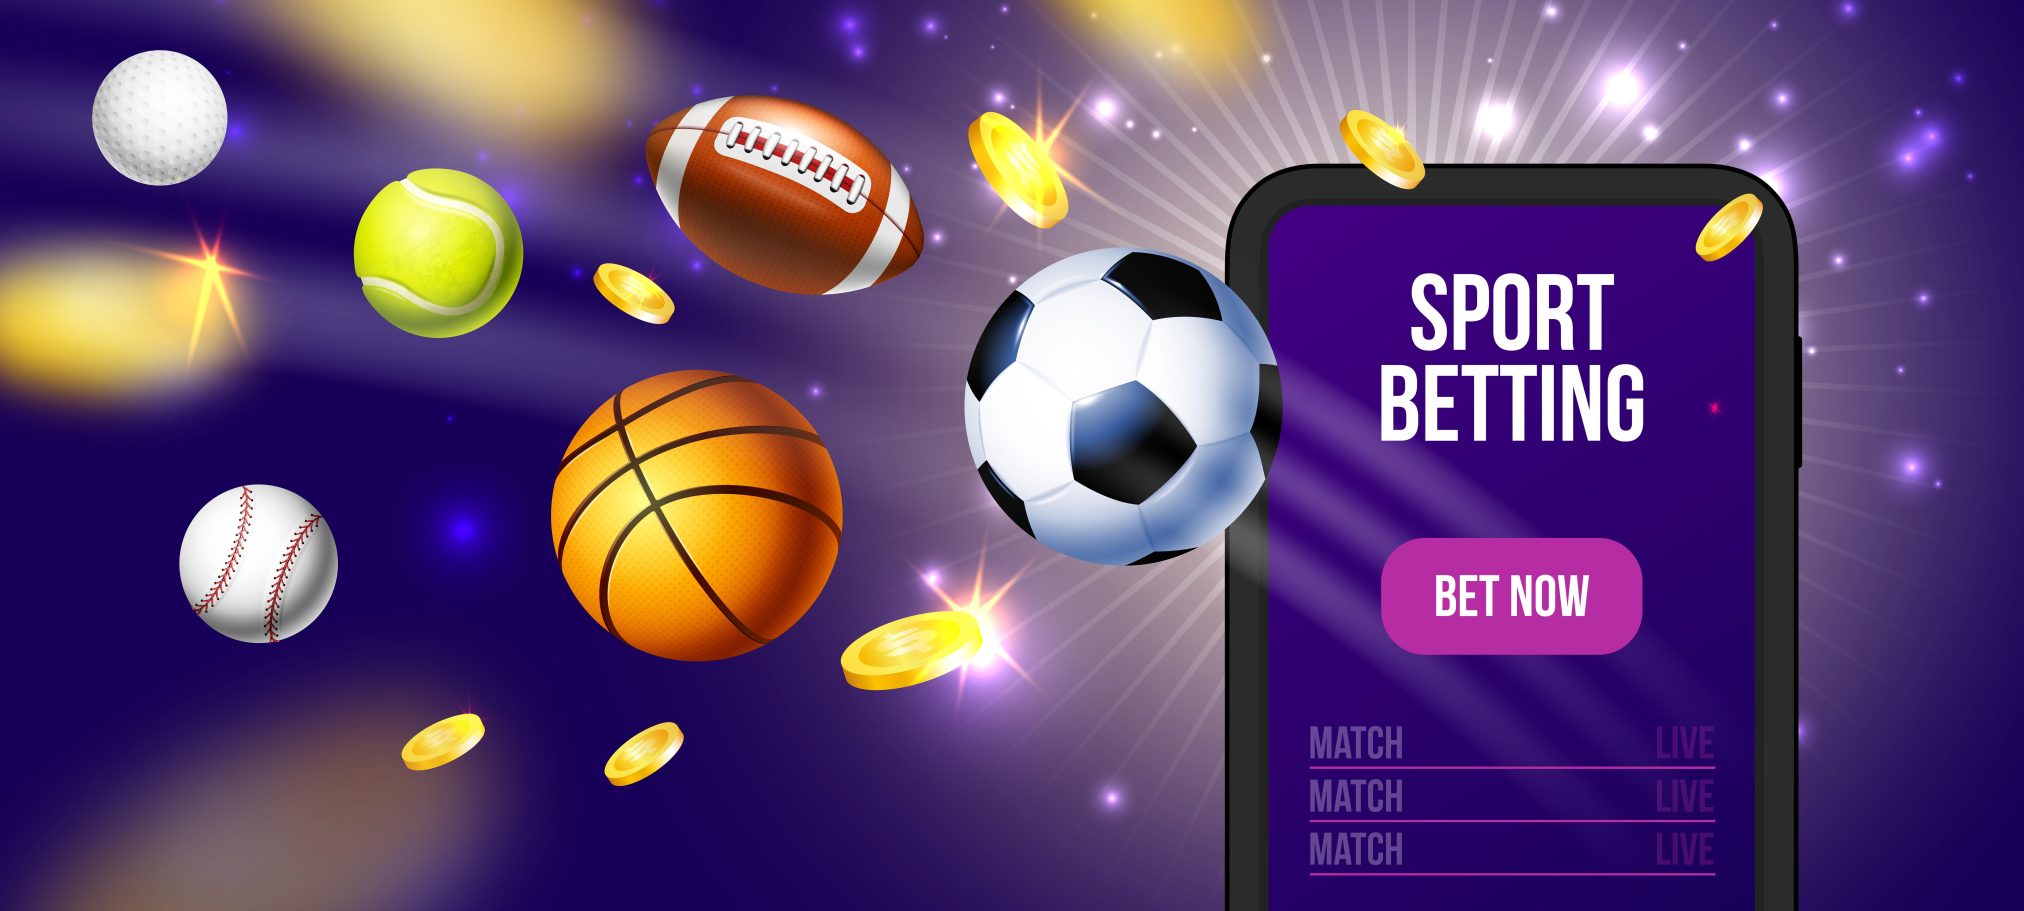 How to Start a Sports Betting Website? - start a sports betting website